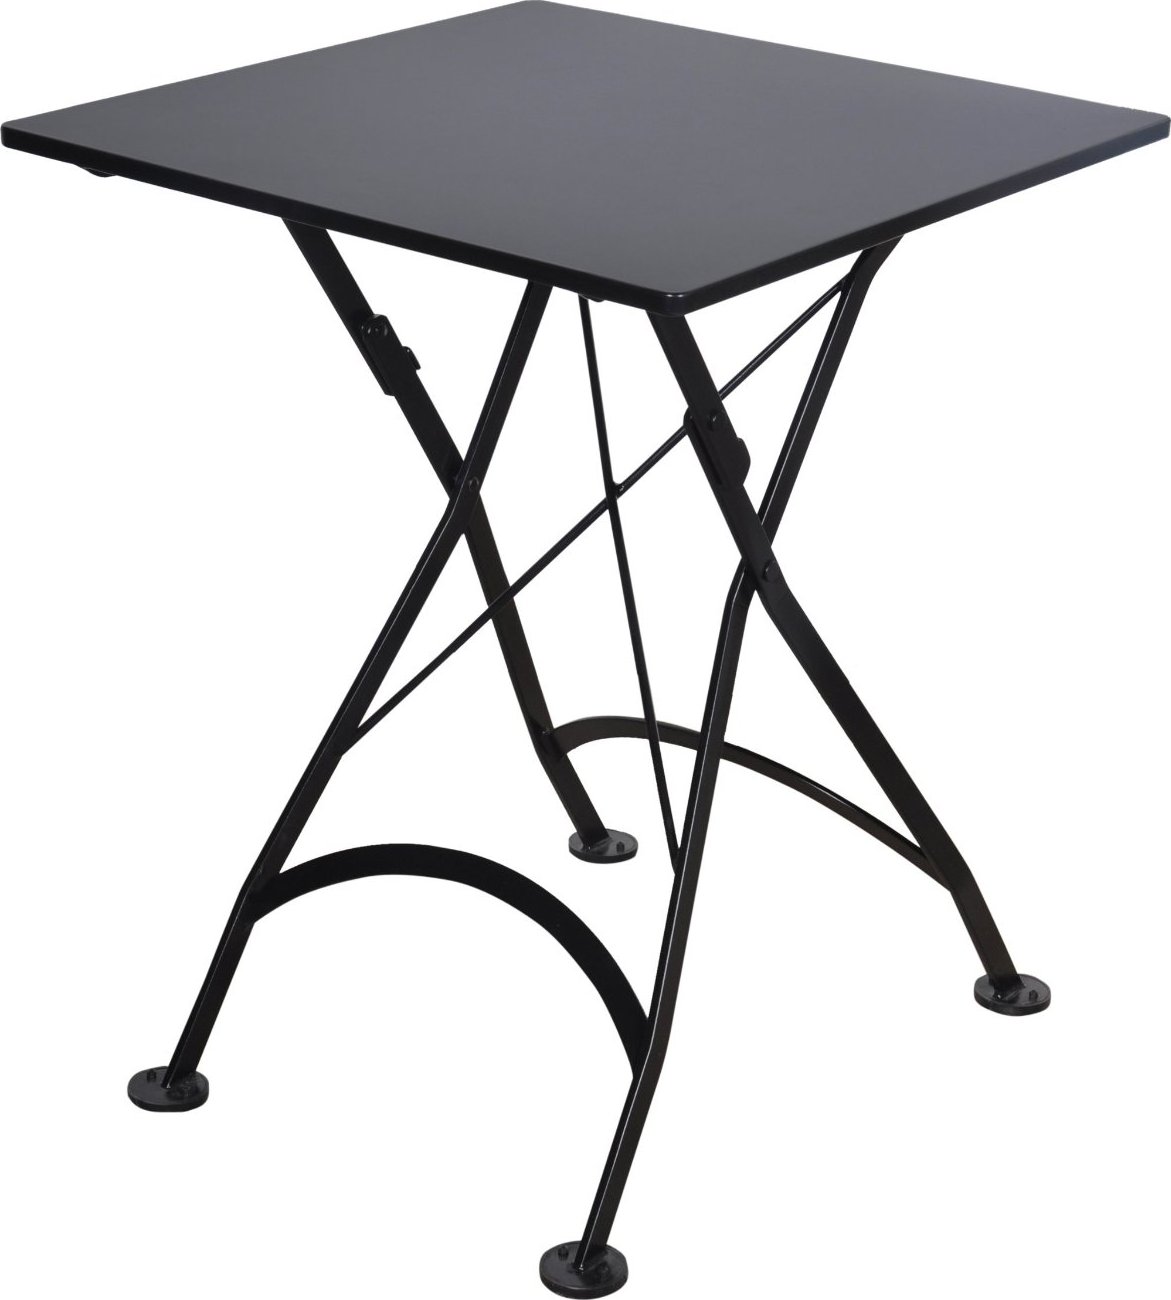 Furniture DesignHouse 24" Square Folding Bistro Table